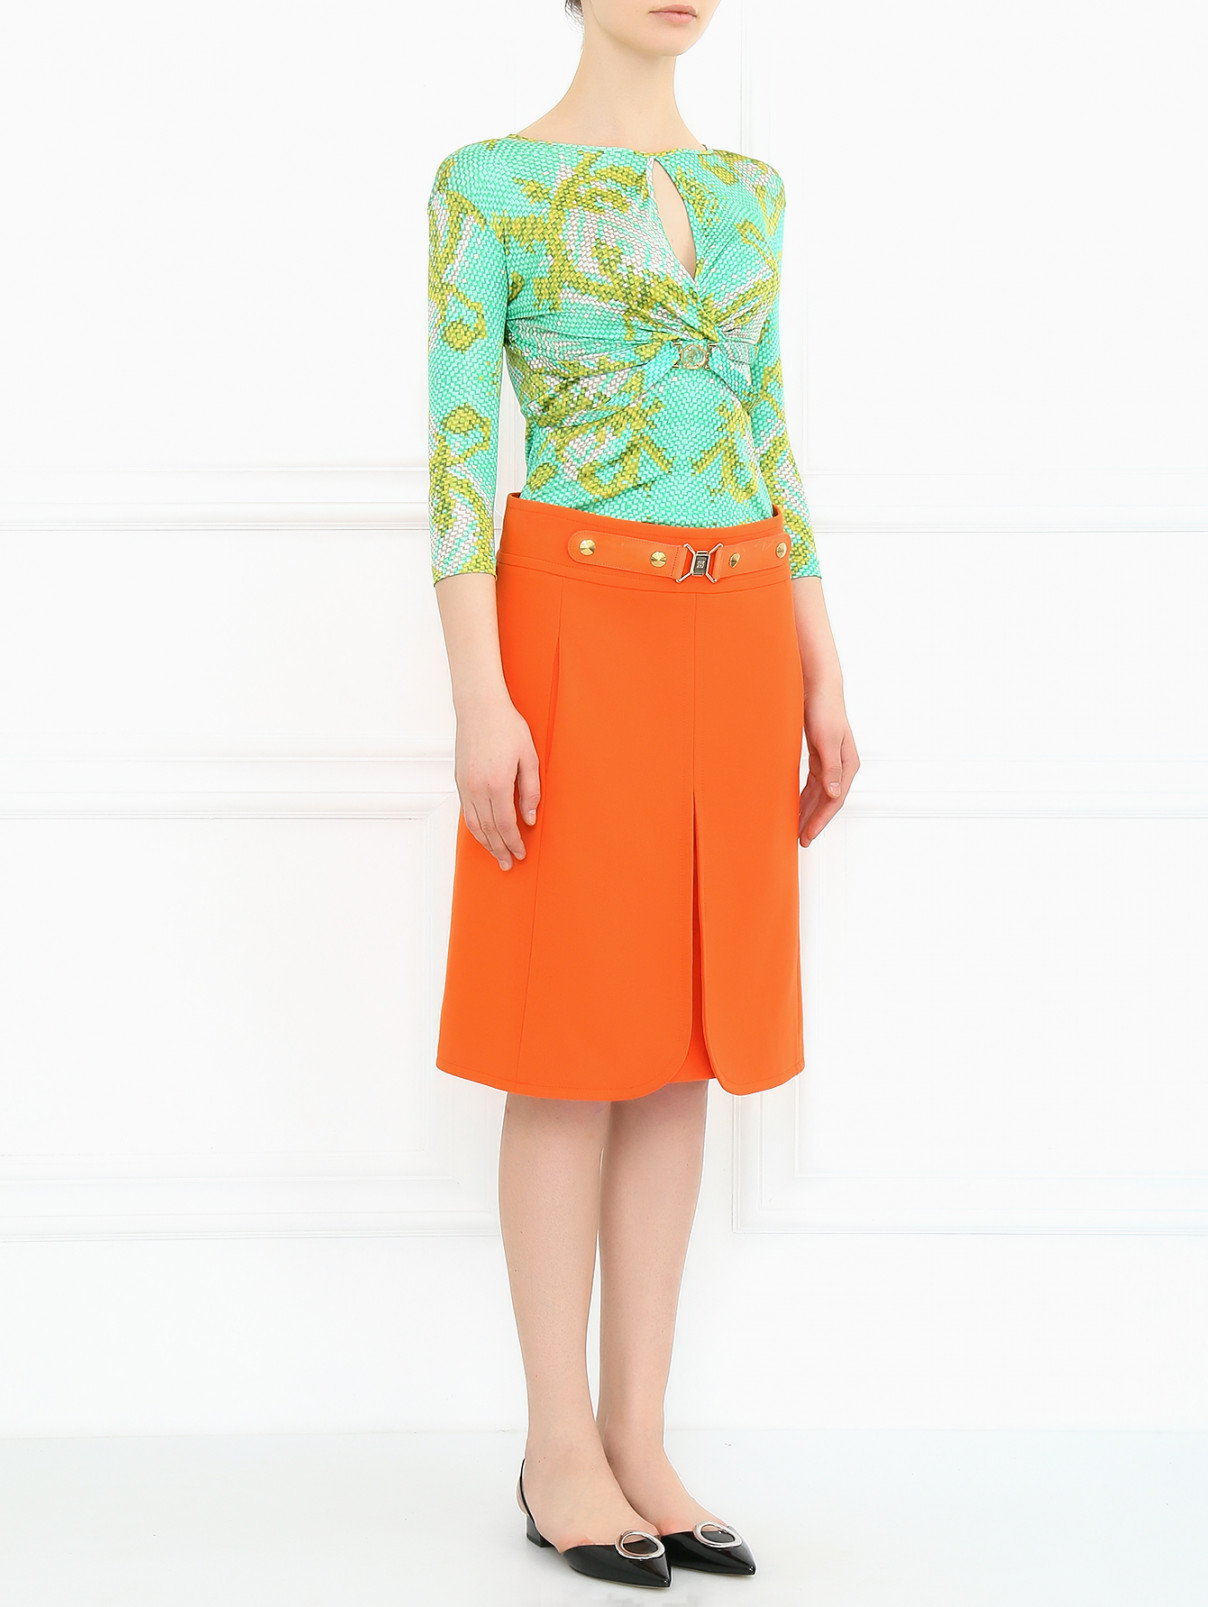 Трикотажная юбка с боковыми карманами Sonia Rykiel  –  Модель Общий вид  – Цвет:  Оранжевый